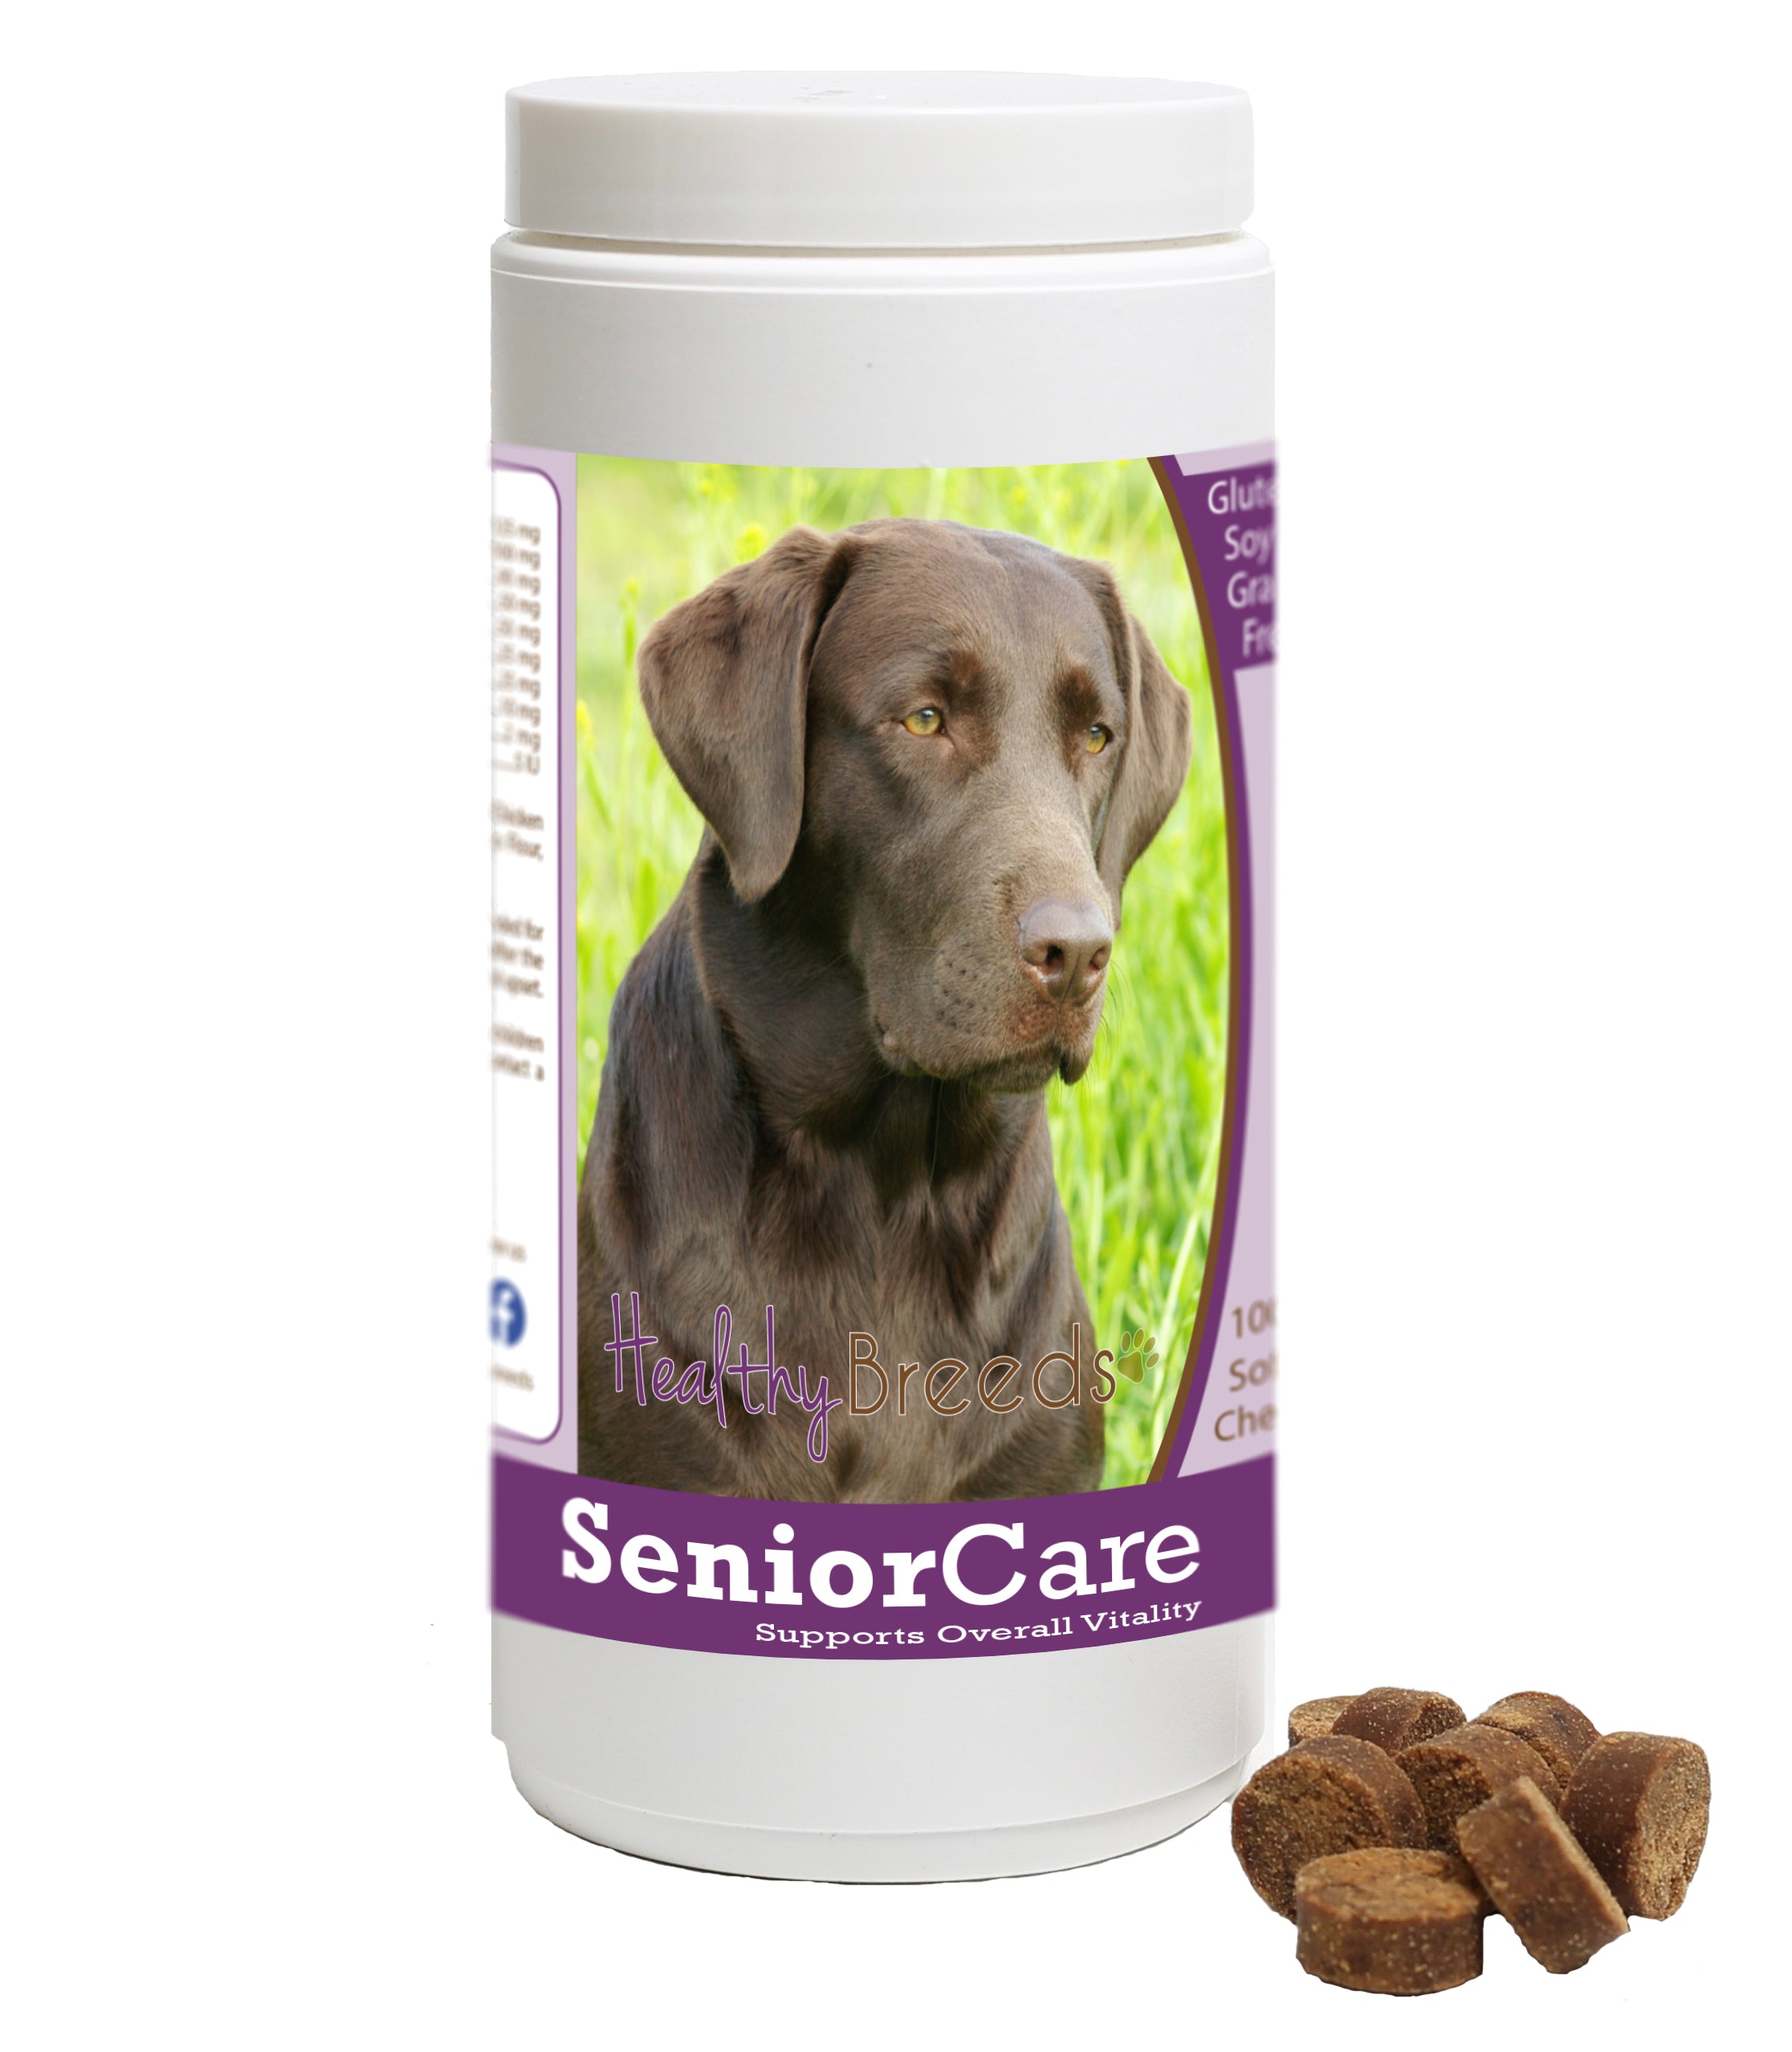 Healthy Breeds Senior Dog Care Soft Chews - Basset Hound